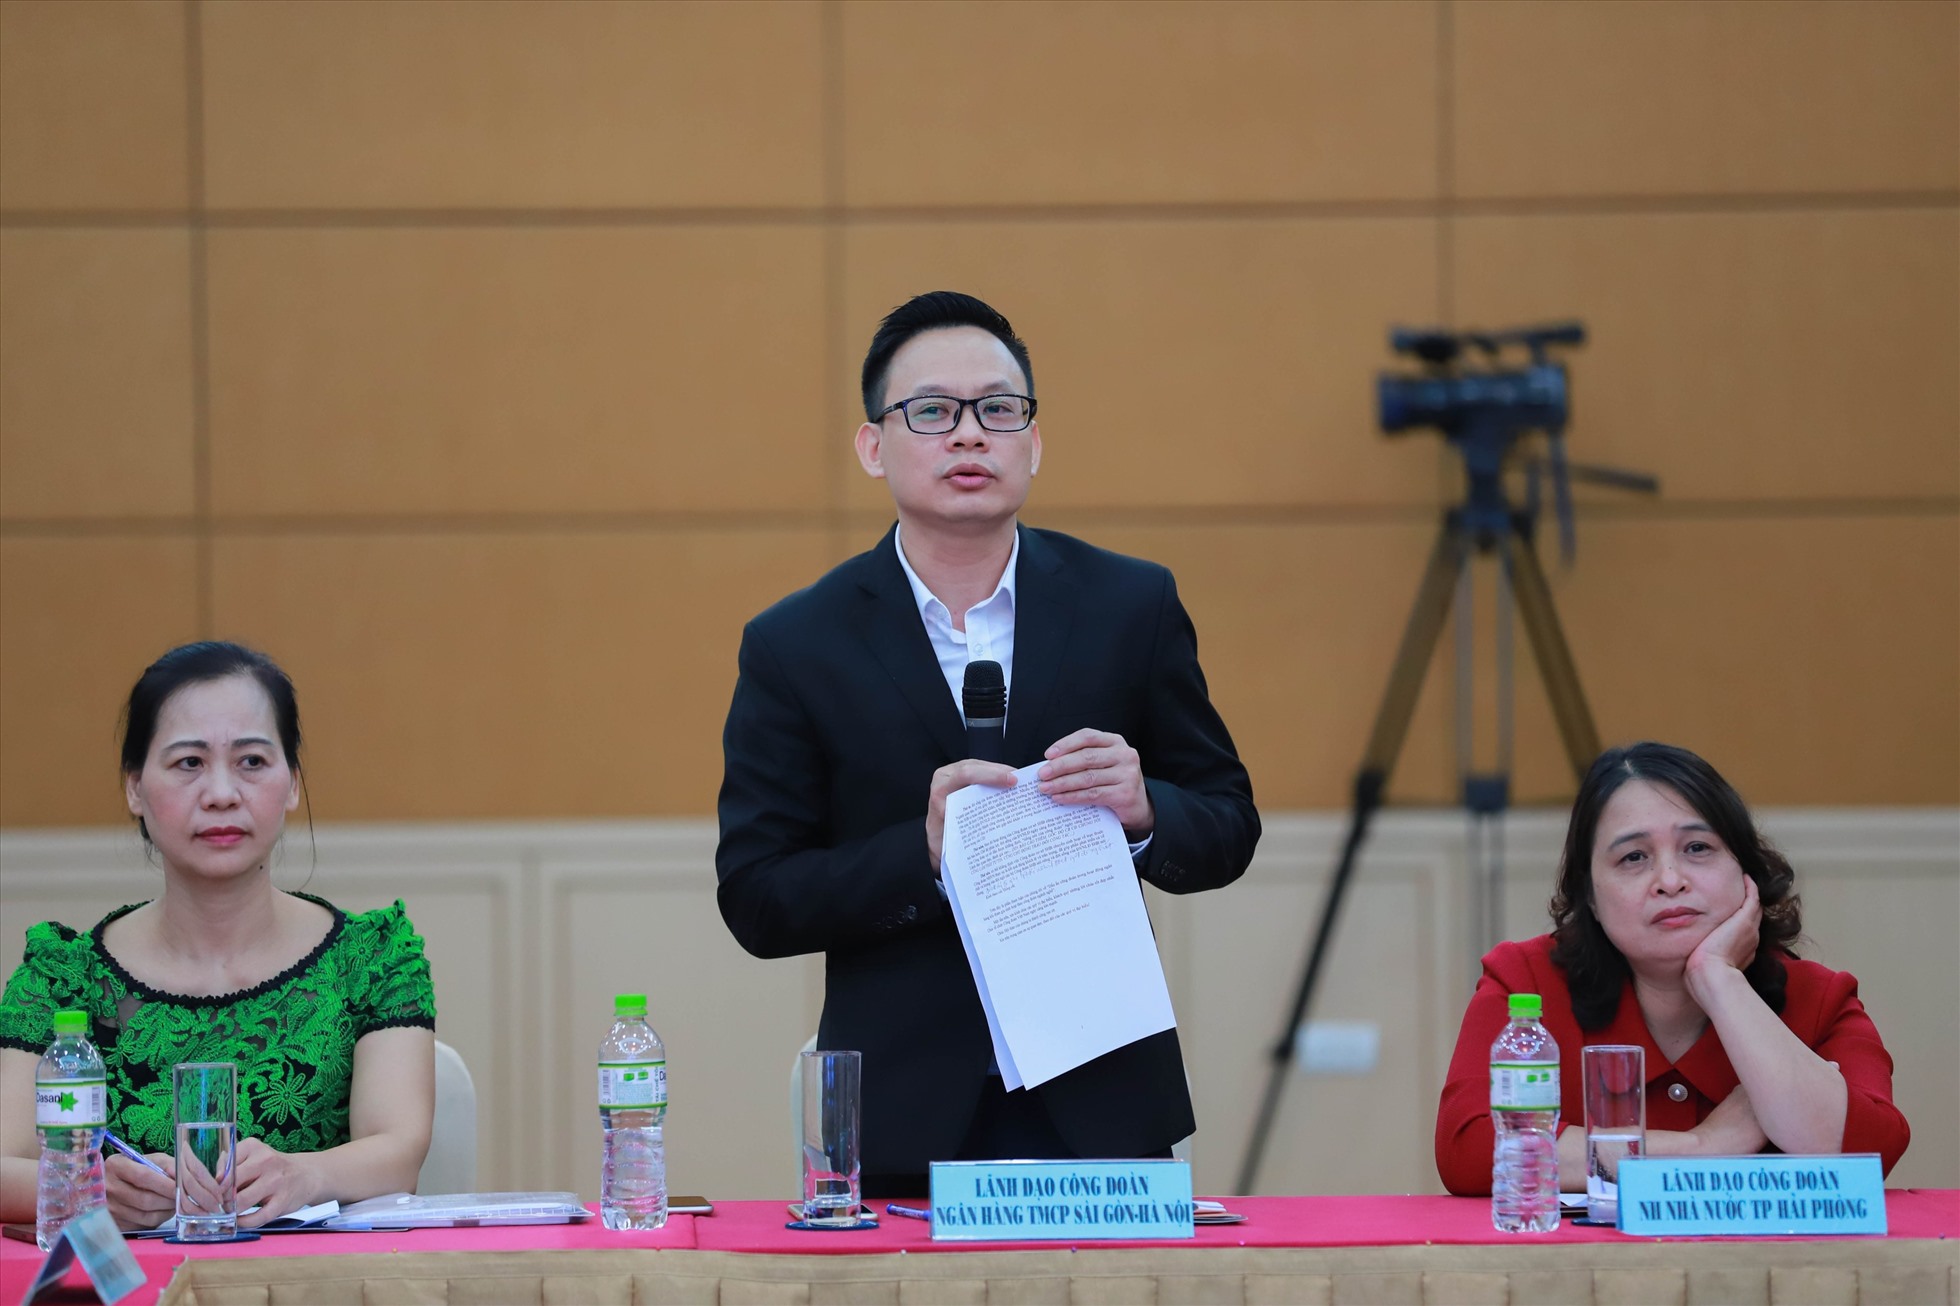 Ông Hà Văn Nam - Ủy viên Ban chấp hành Công đoàn cơ sở Ngân hàng SHB